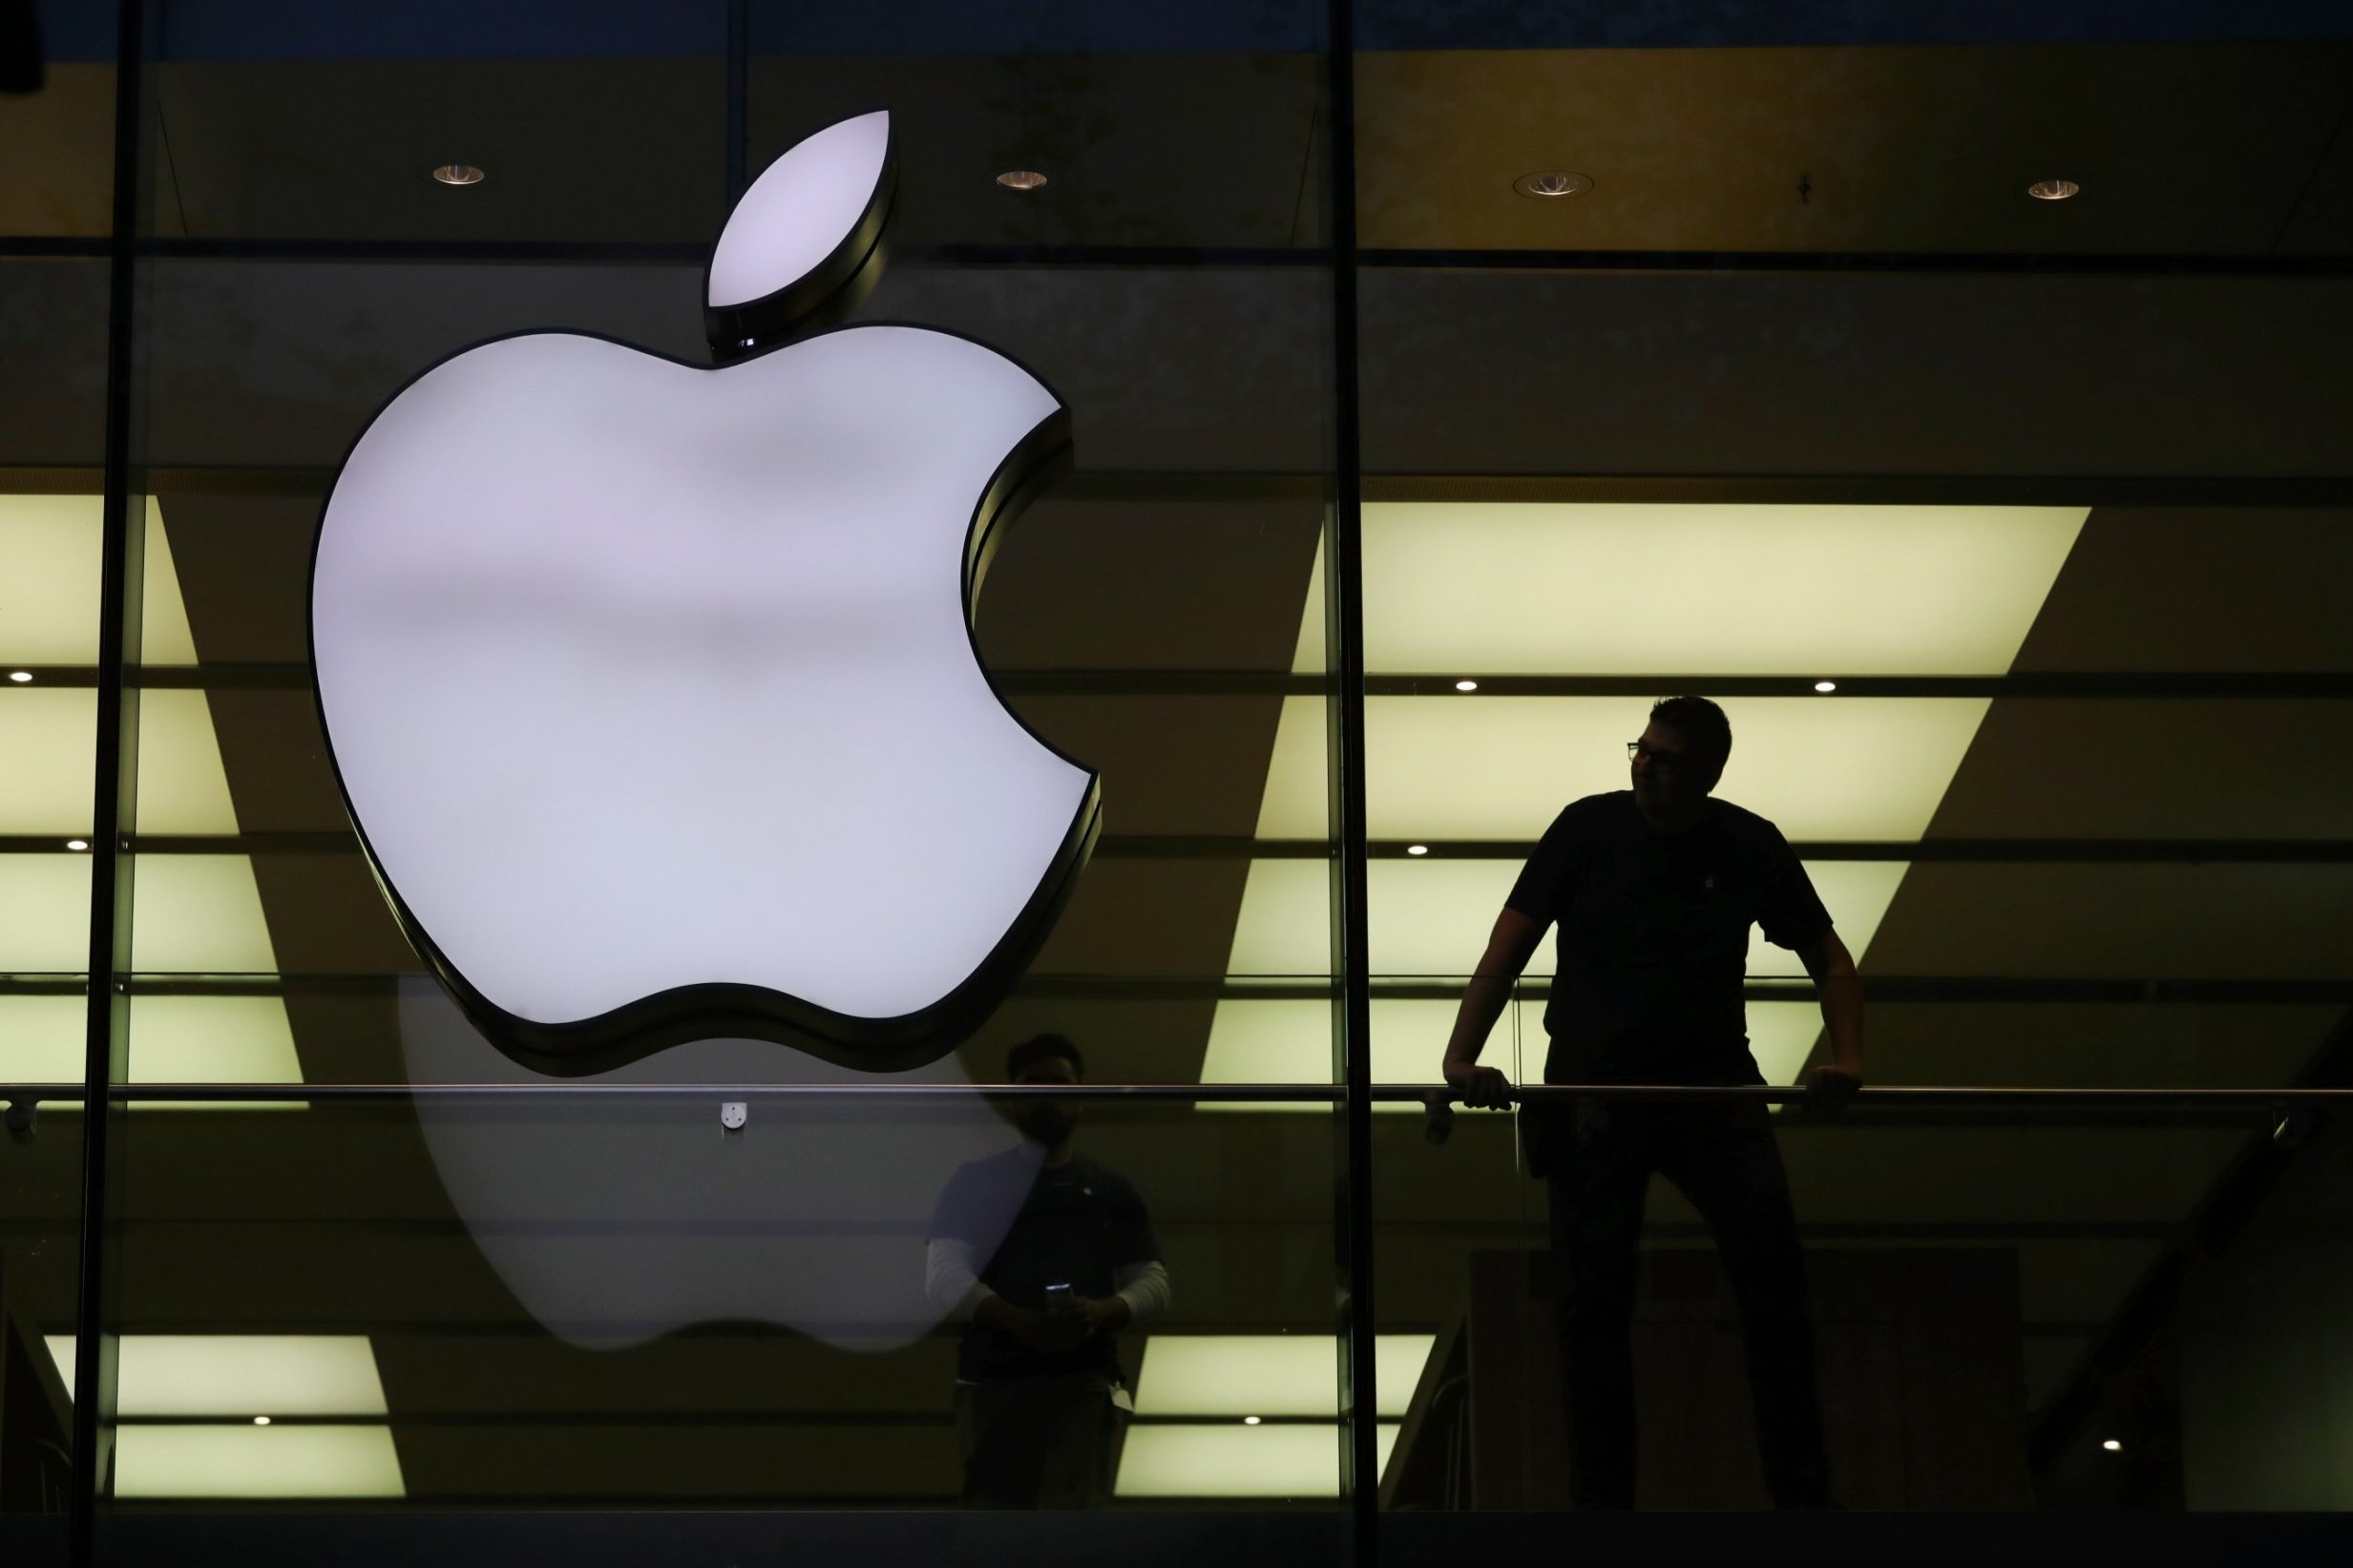 Megerősítette az Apple, hogy nem lopott személyes adatokat az ausztrál tinédzser